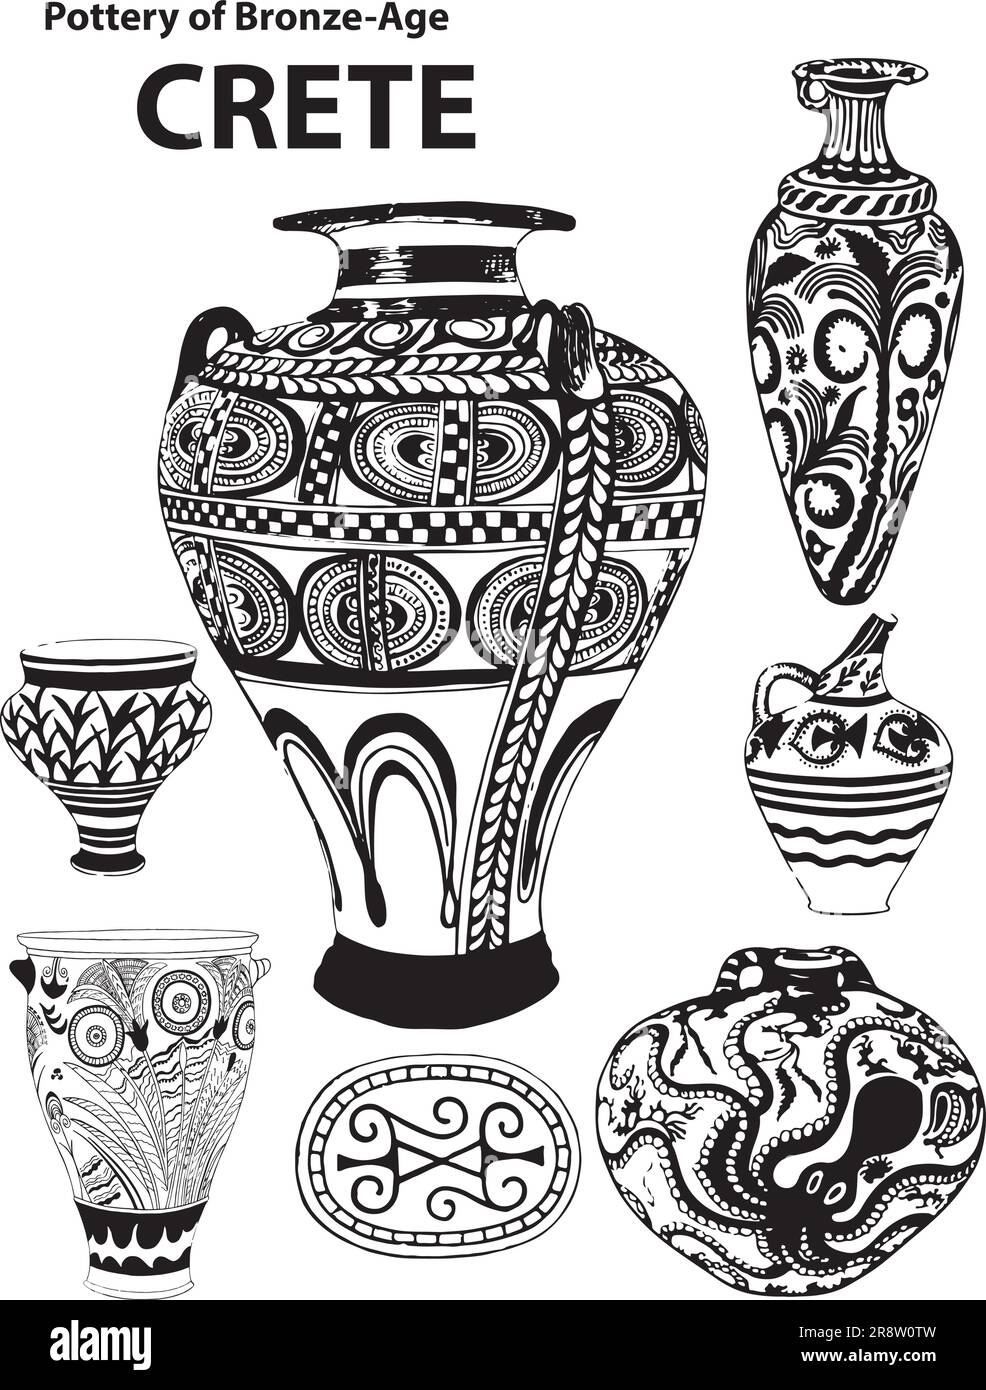 Des images en noir et blanc de poterie de l'âge de braoze de Crète, avec des conceptions et un style crétois uniques. Illustration de Vecteur